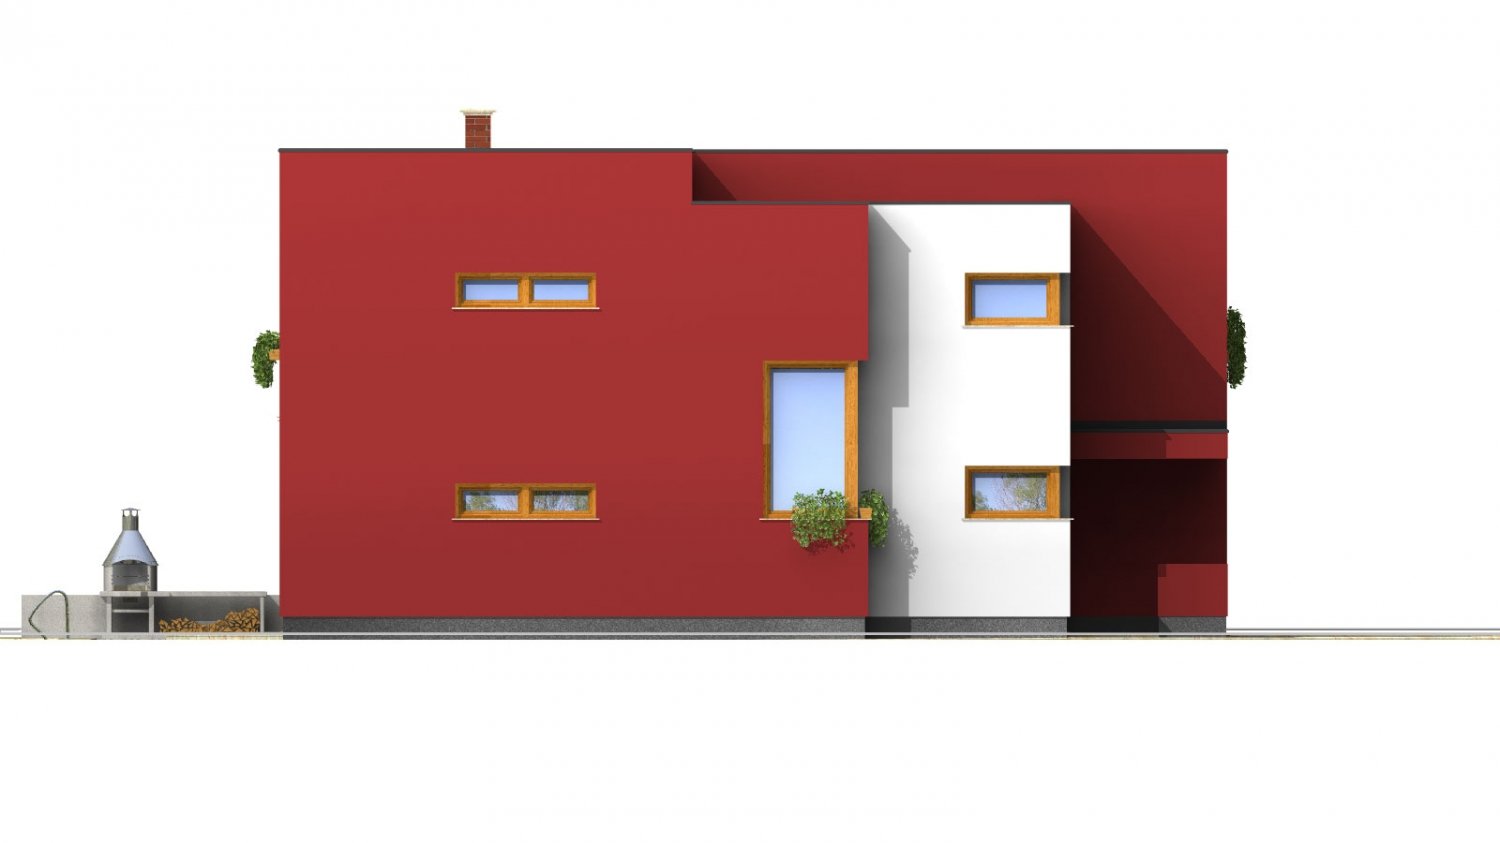 Zrkadlový pohľad 2. - Moderní exkluzivní dům s dvojgaráží a plochou střechou.